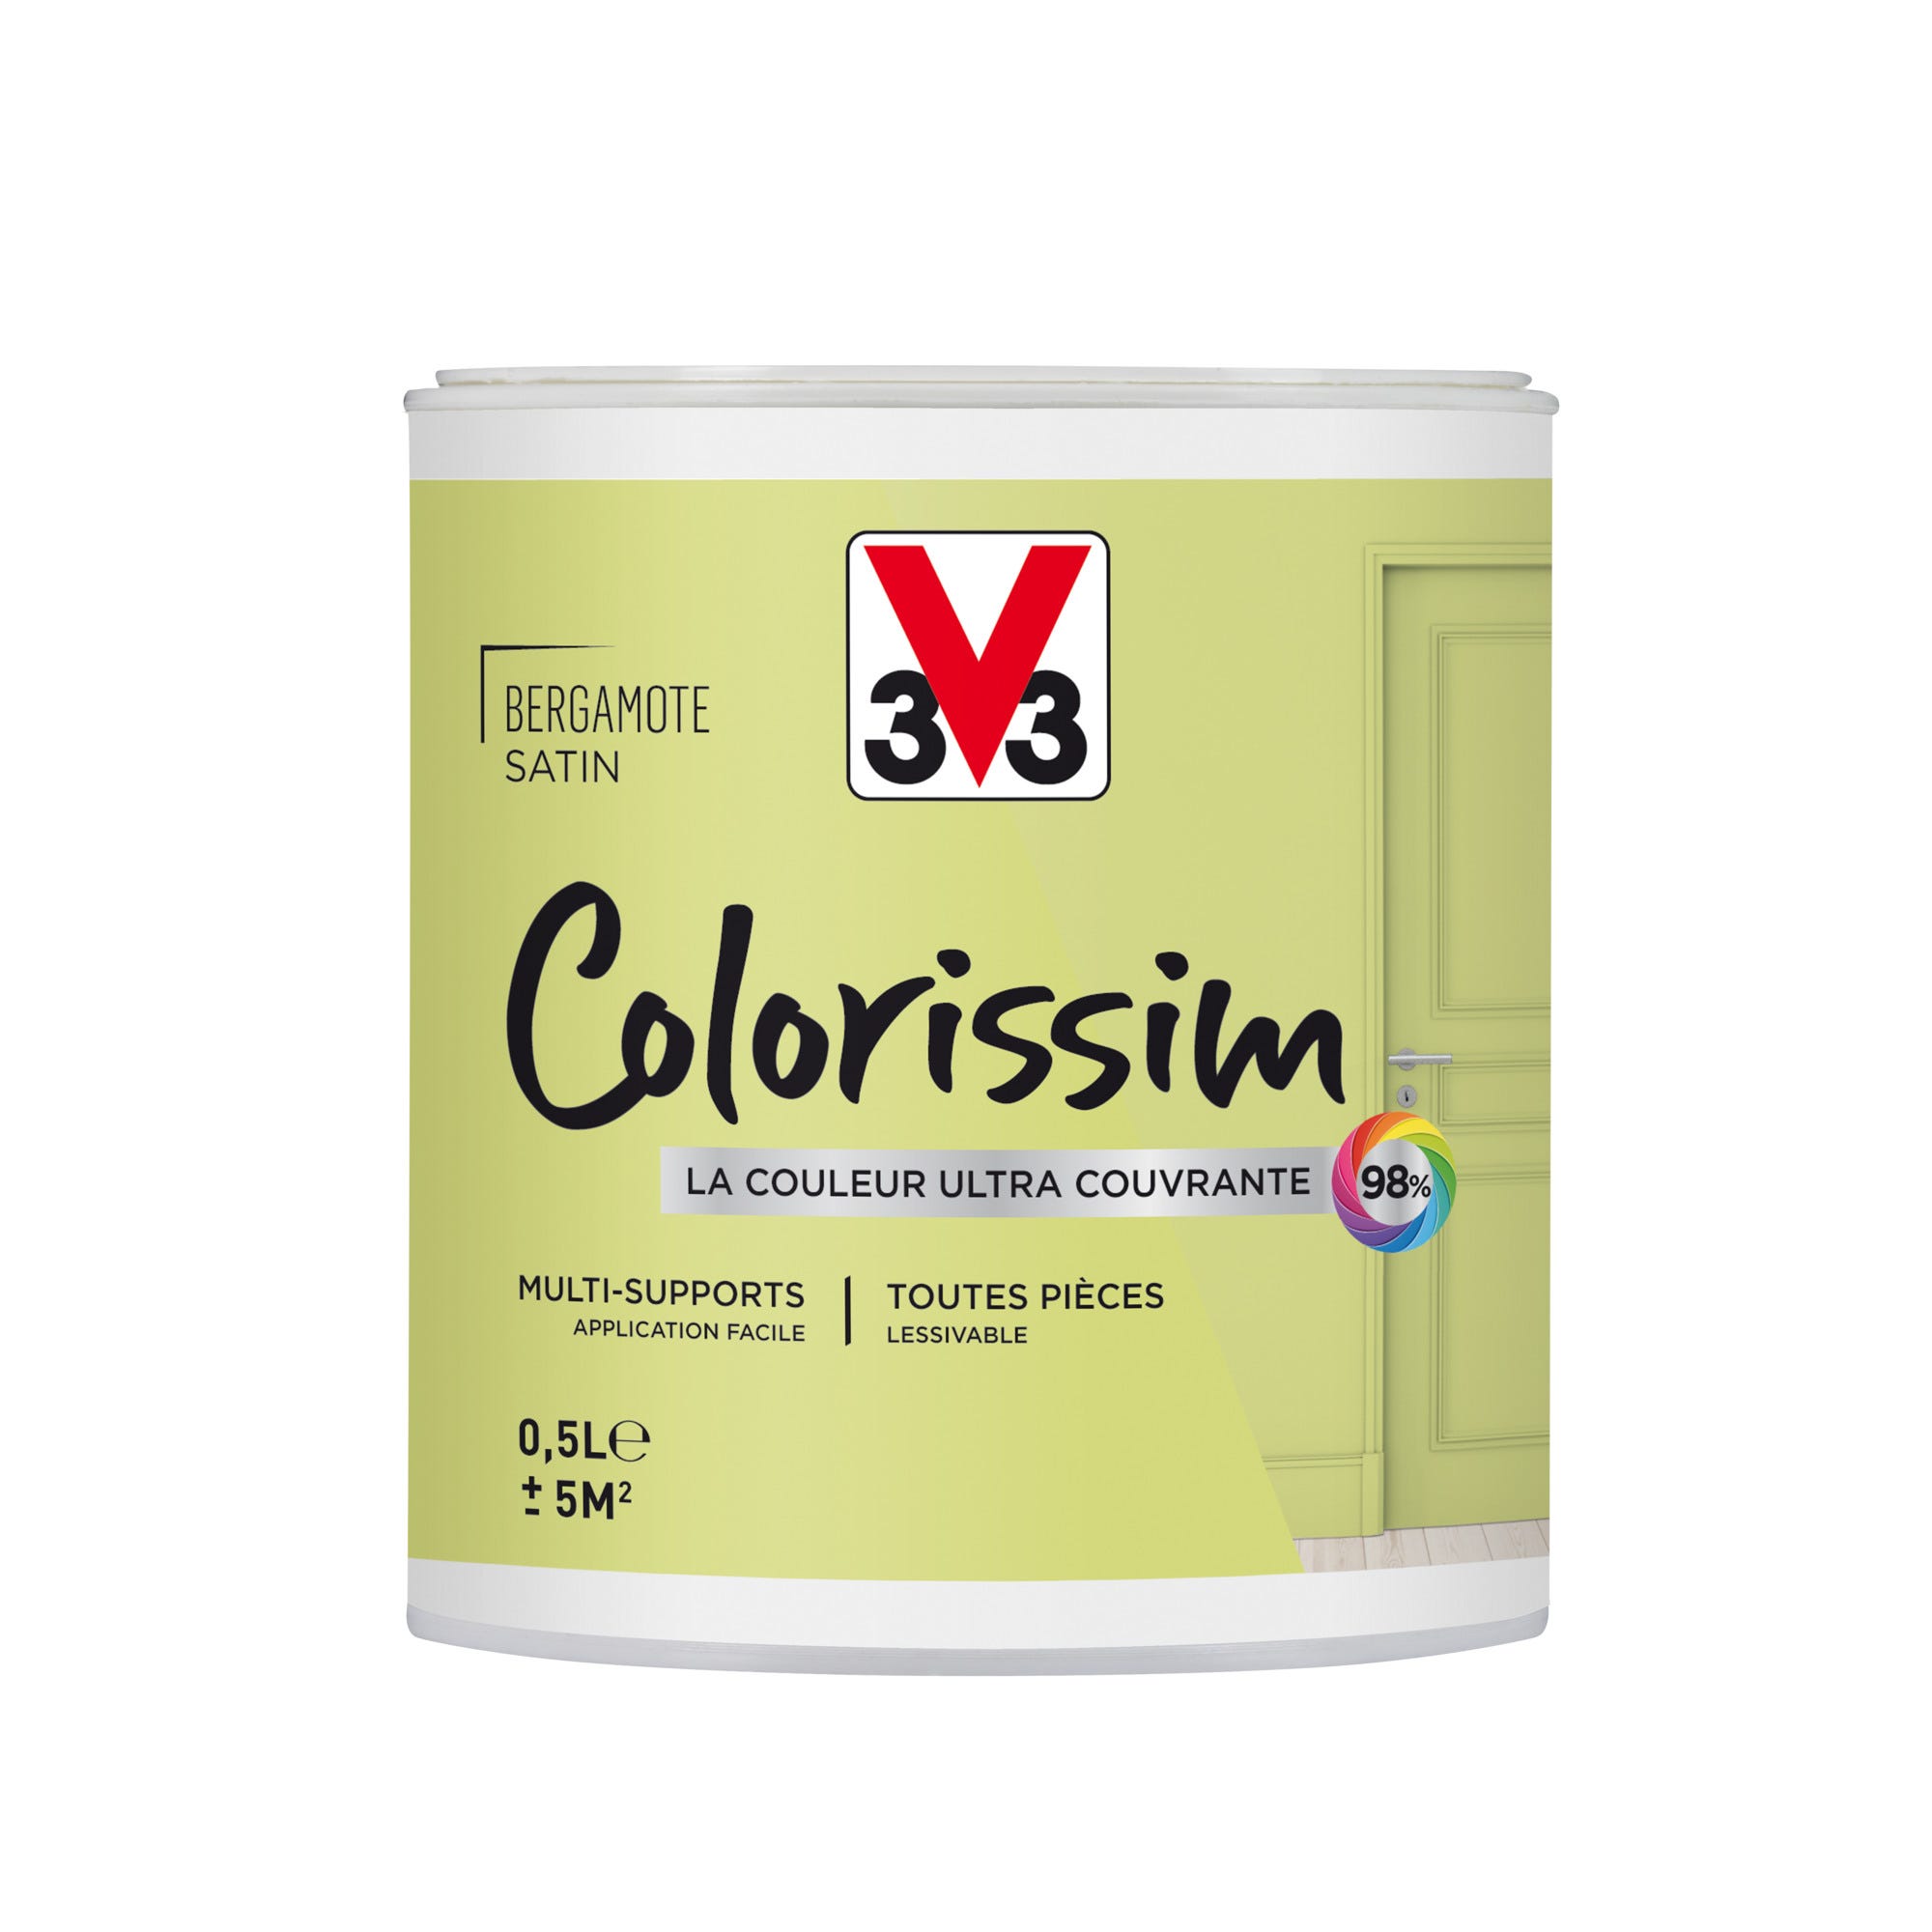 Peinture intérieure multi-supports acrylique satin bergamote 0,5 L - V33 COLORISSIM 0